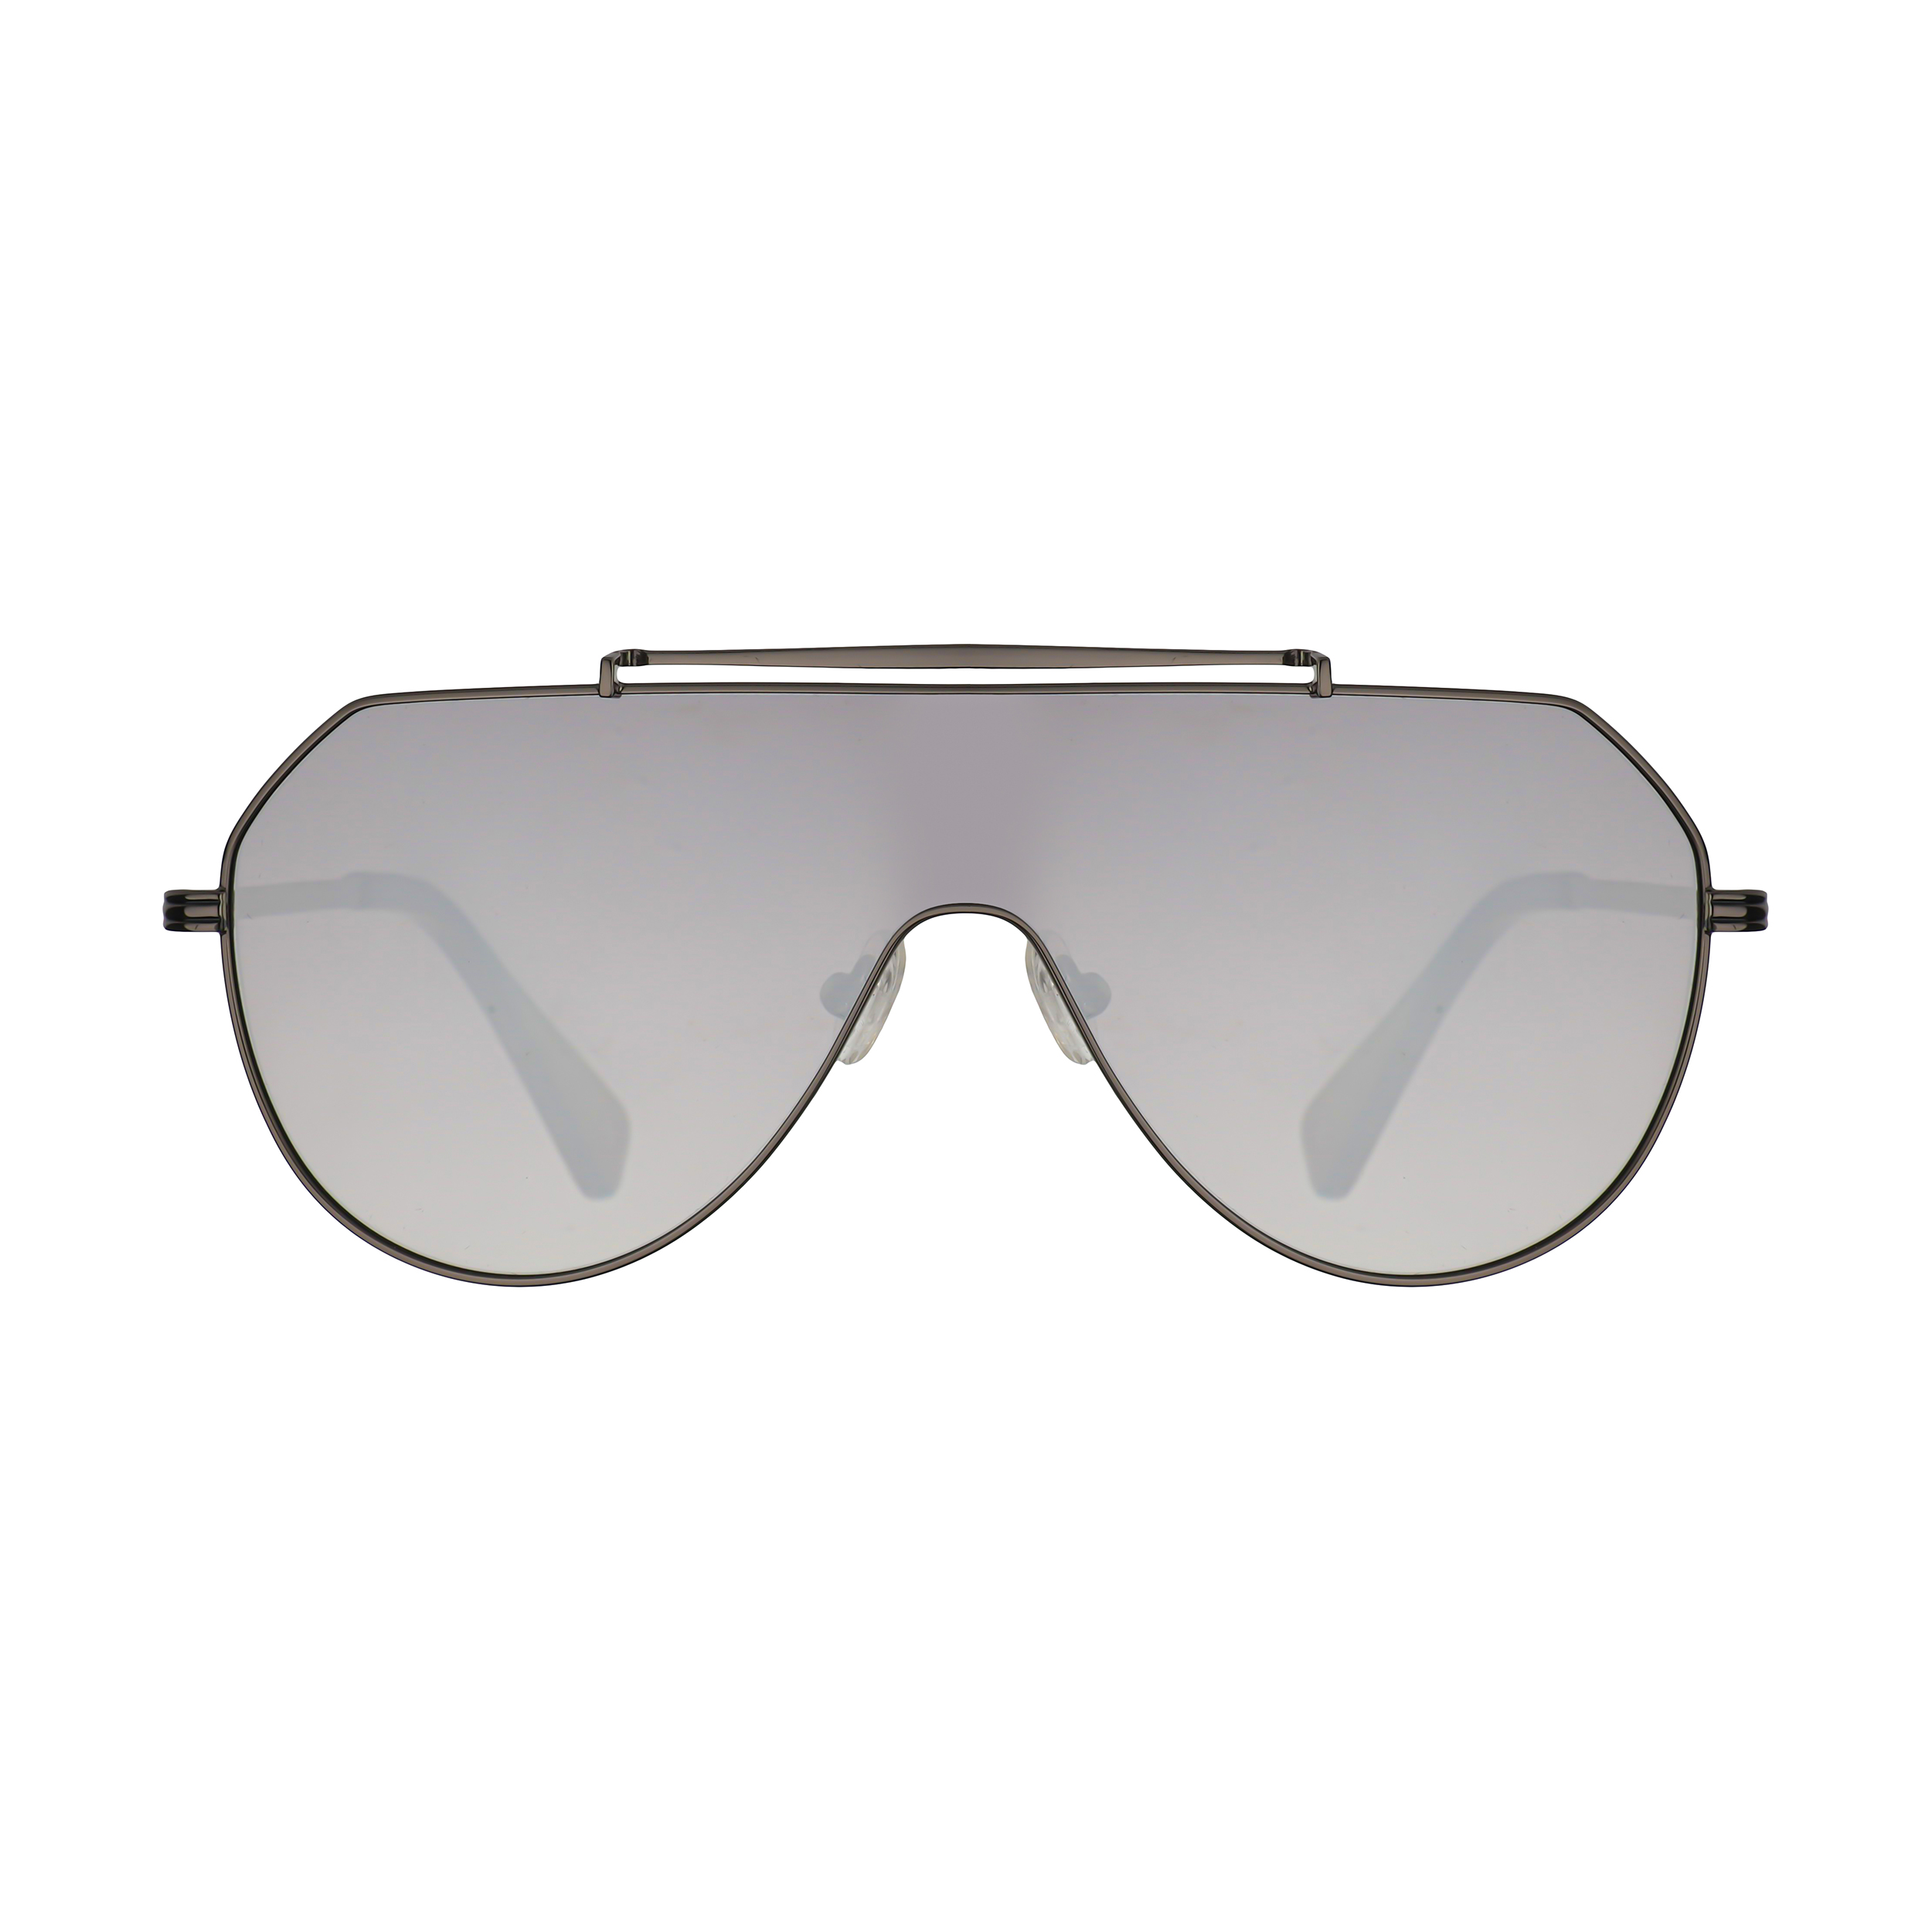 عینک آفتابی دیفرنکلین مدل 816 raptor av gunmetal silver -  - 1